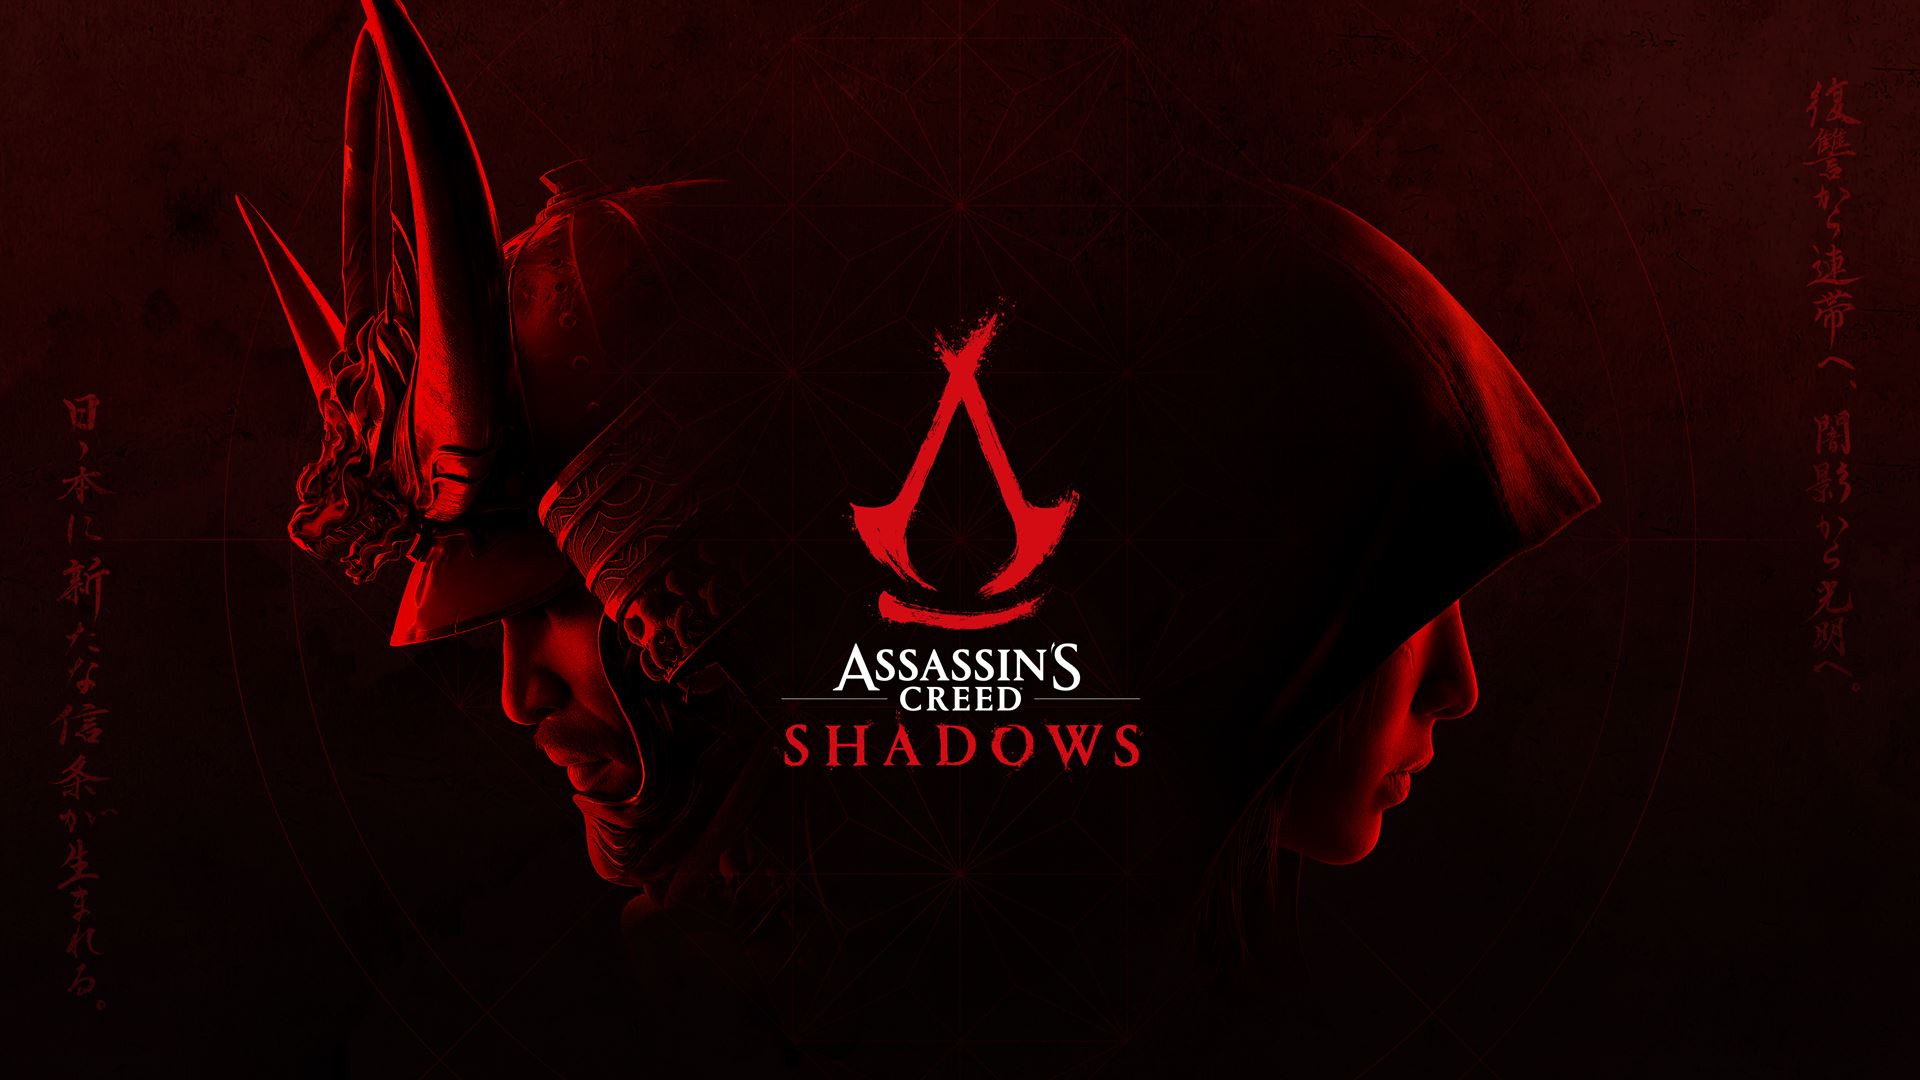 Assassin's Creed Shadows: ตัวอย่างภาพยนตร์รอบปฐมทัศน์อย่างเป็นทางการพร้อมกันทั่วโลก